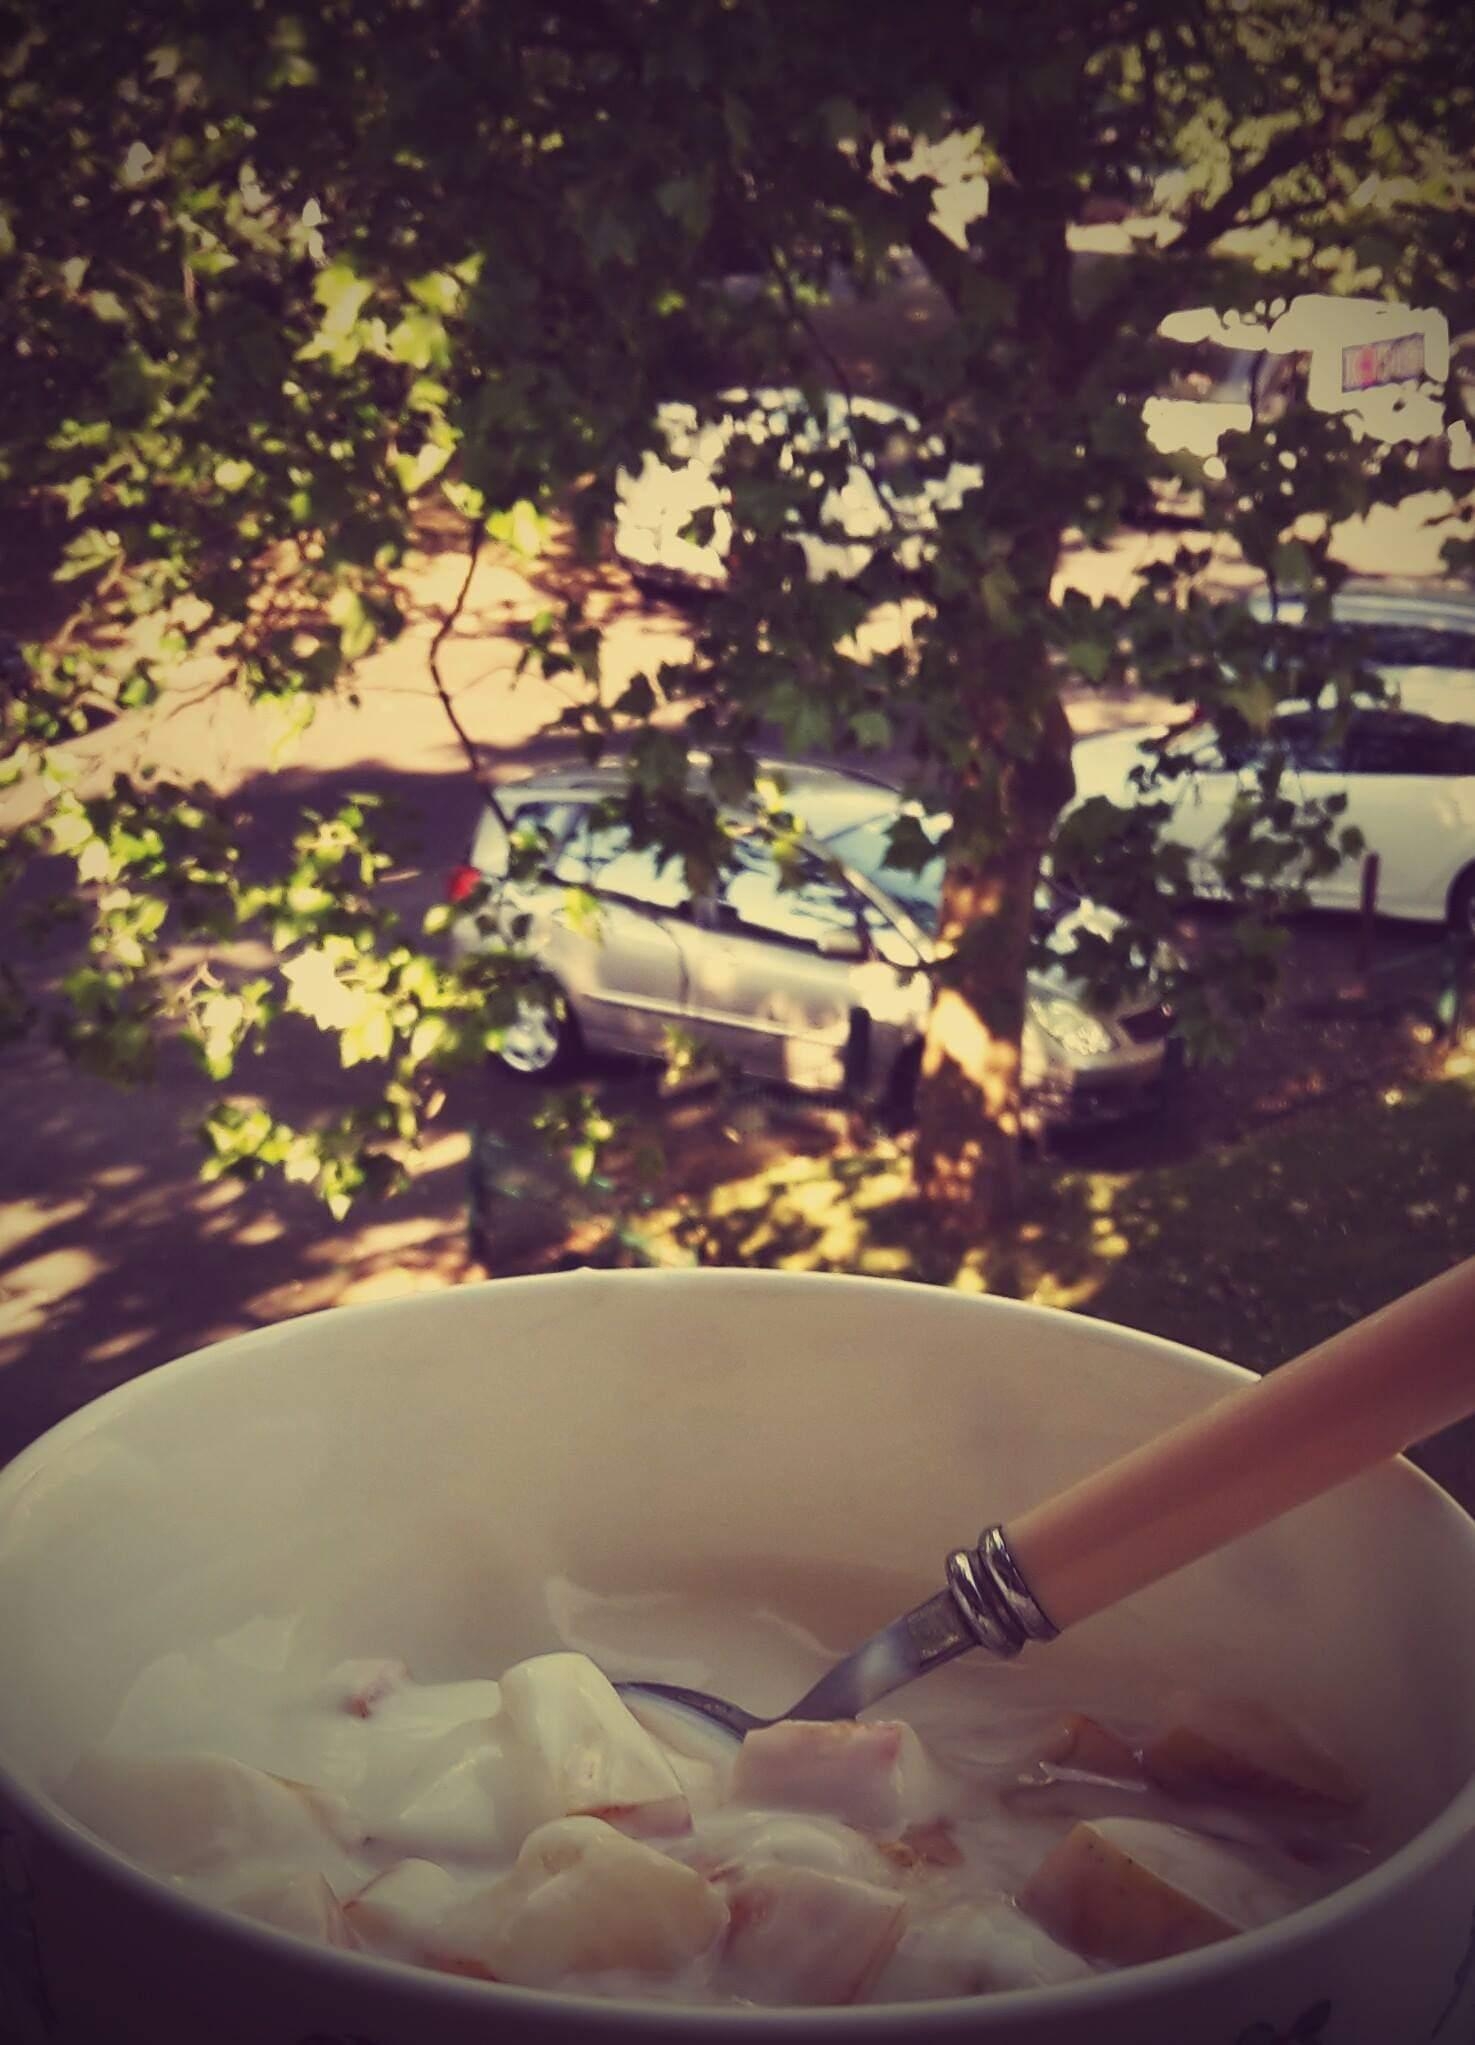 Kleiner Zwischensnack auf dem Balkon (Joghurt mit Äpfeln).
#Snack
#Äpfel 
#Joghurt 
#Balkon